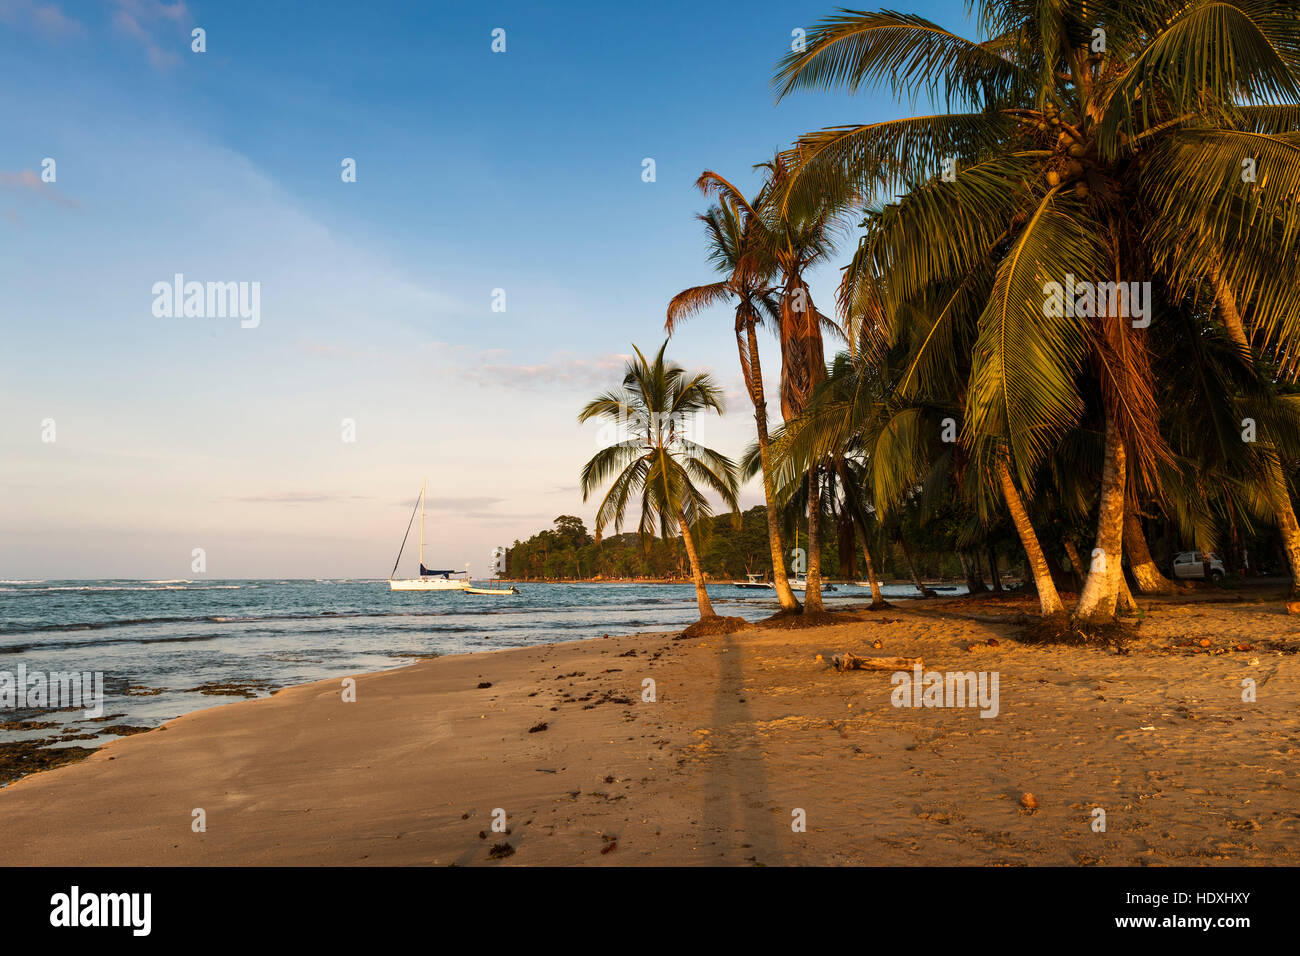 Vista de una playa con palmeras y barcos en Puerto Viejo de Talamanca, Costa Rica, Centroamérica Foto de stock